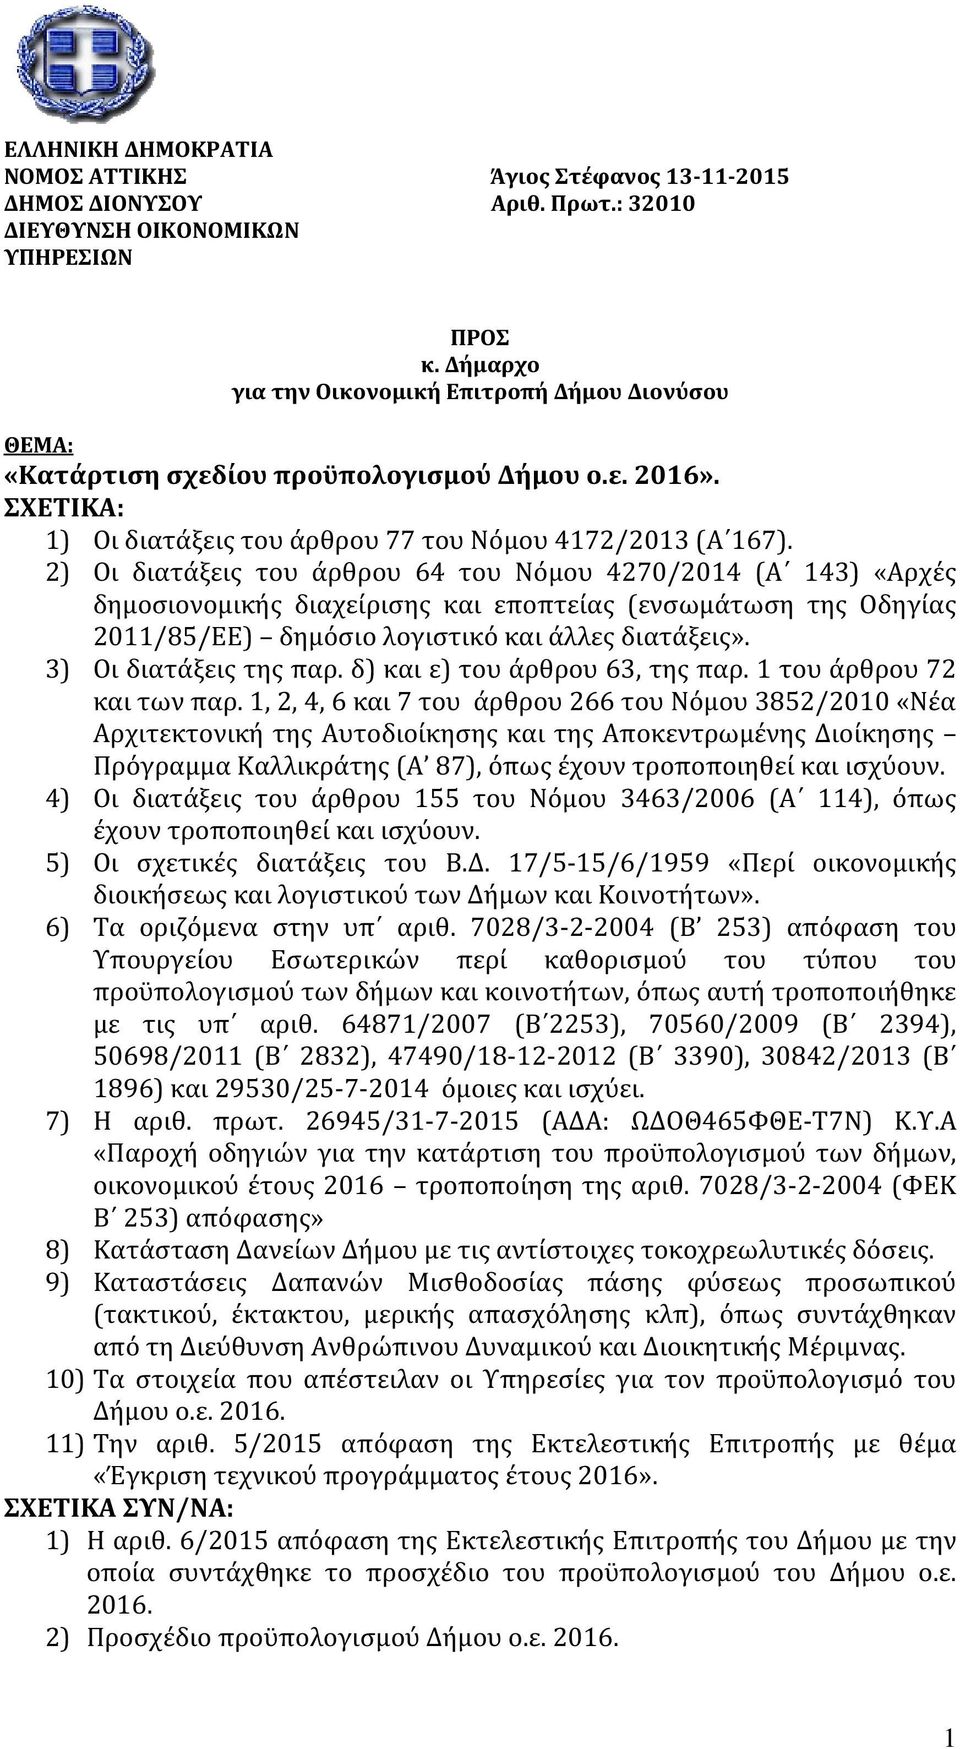 2) Οι διατα ξεις του α ρθρου 64 του Νο μου 4270/2014 (Α 143) «Αρχε ς δημοσιονομικής διαχείρισης και εποπτείας (ενσωμάτωση της Οδηγίας 2011/85/ΕΕ) δημόσιο λογιστικό και άλλες διατάξεις».